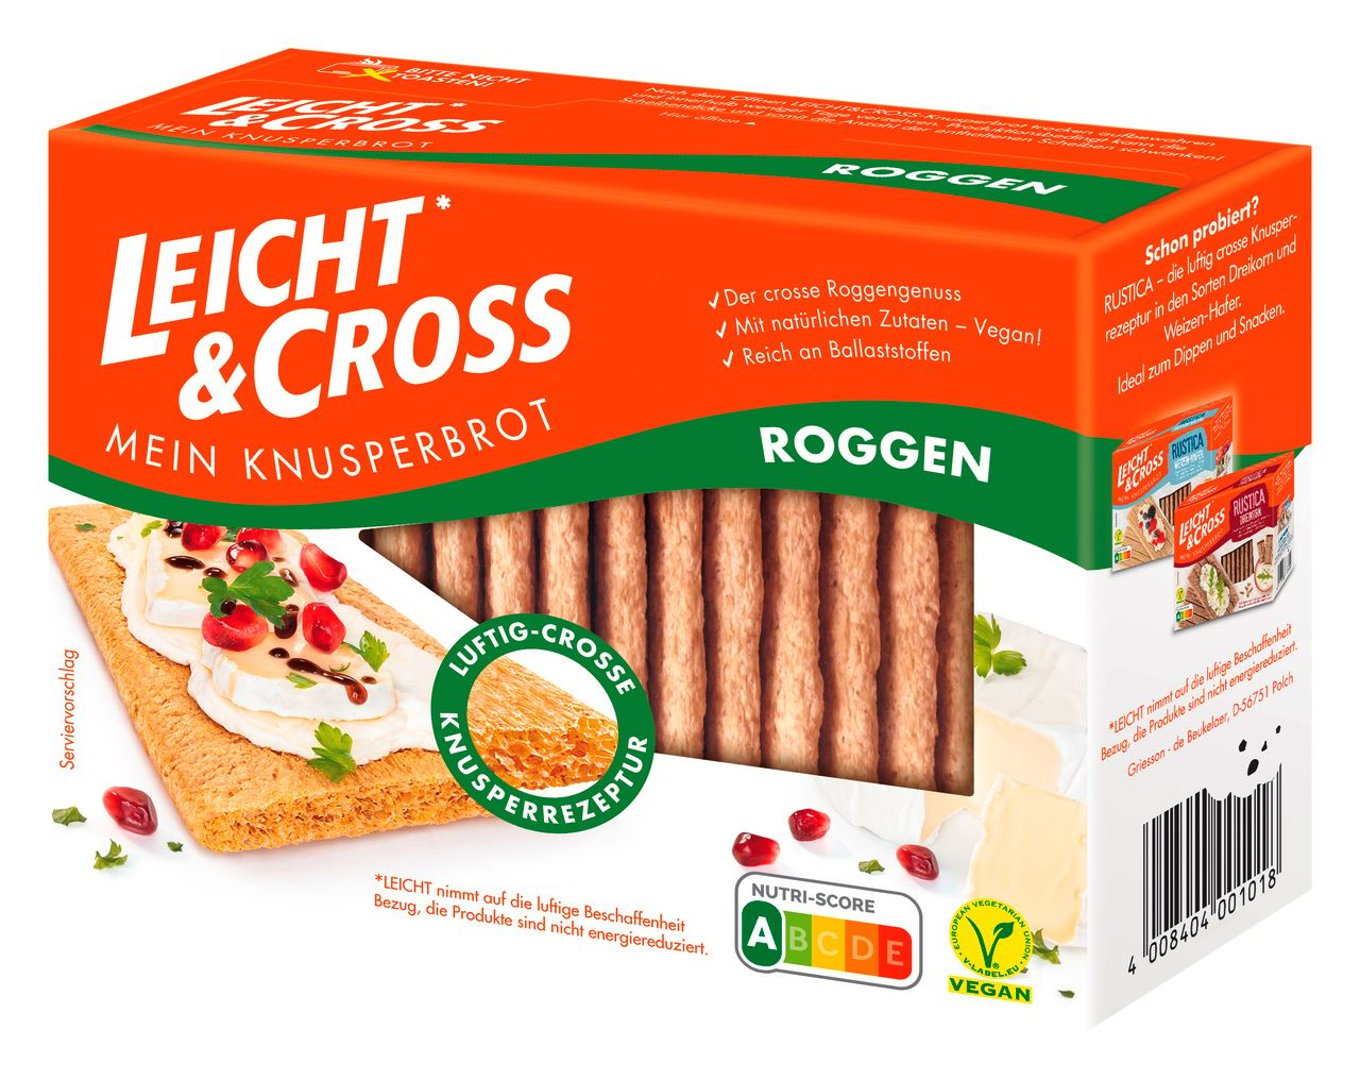 Leicht & Cross - Knusperbrot Roggen verzehrfertig, geschnitten, aus Weizen 125 g Schachtel